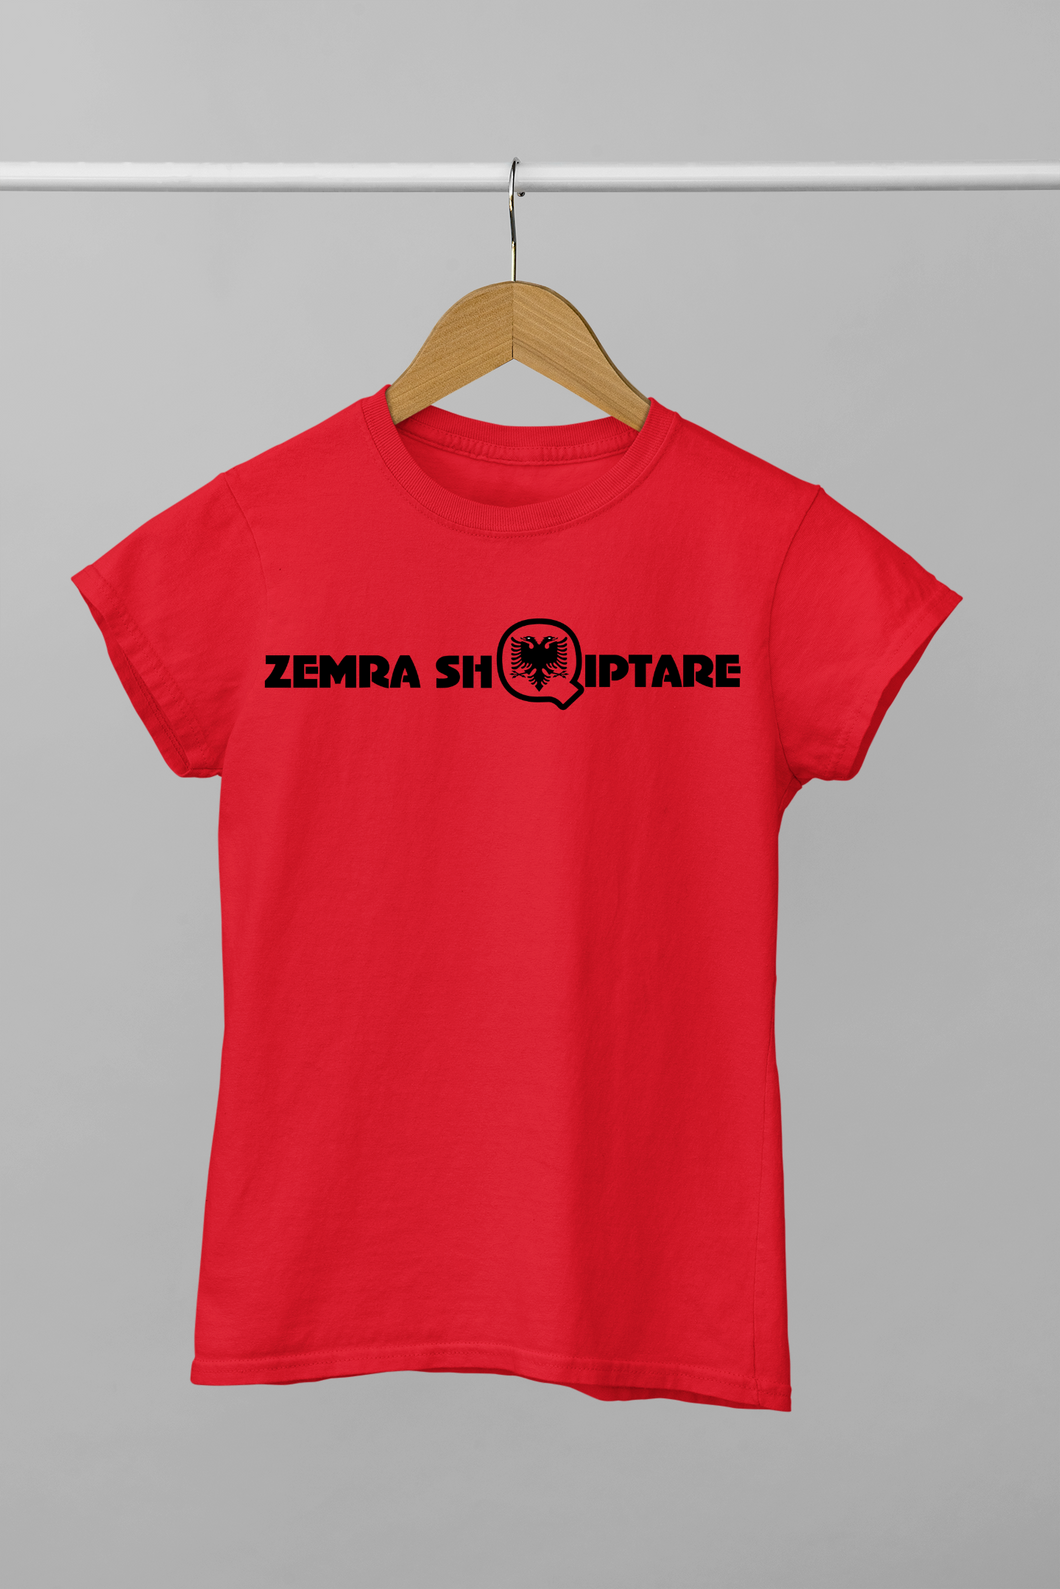 Zemra shqiptare print t-shirt